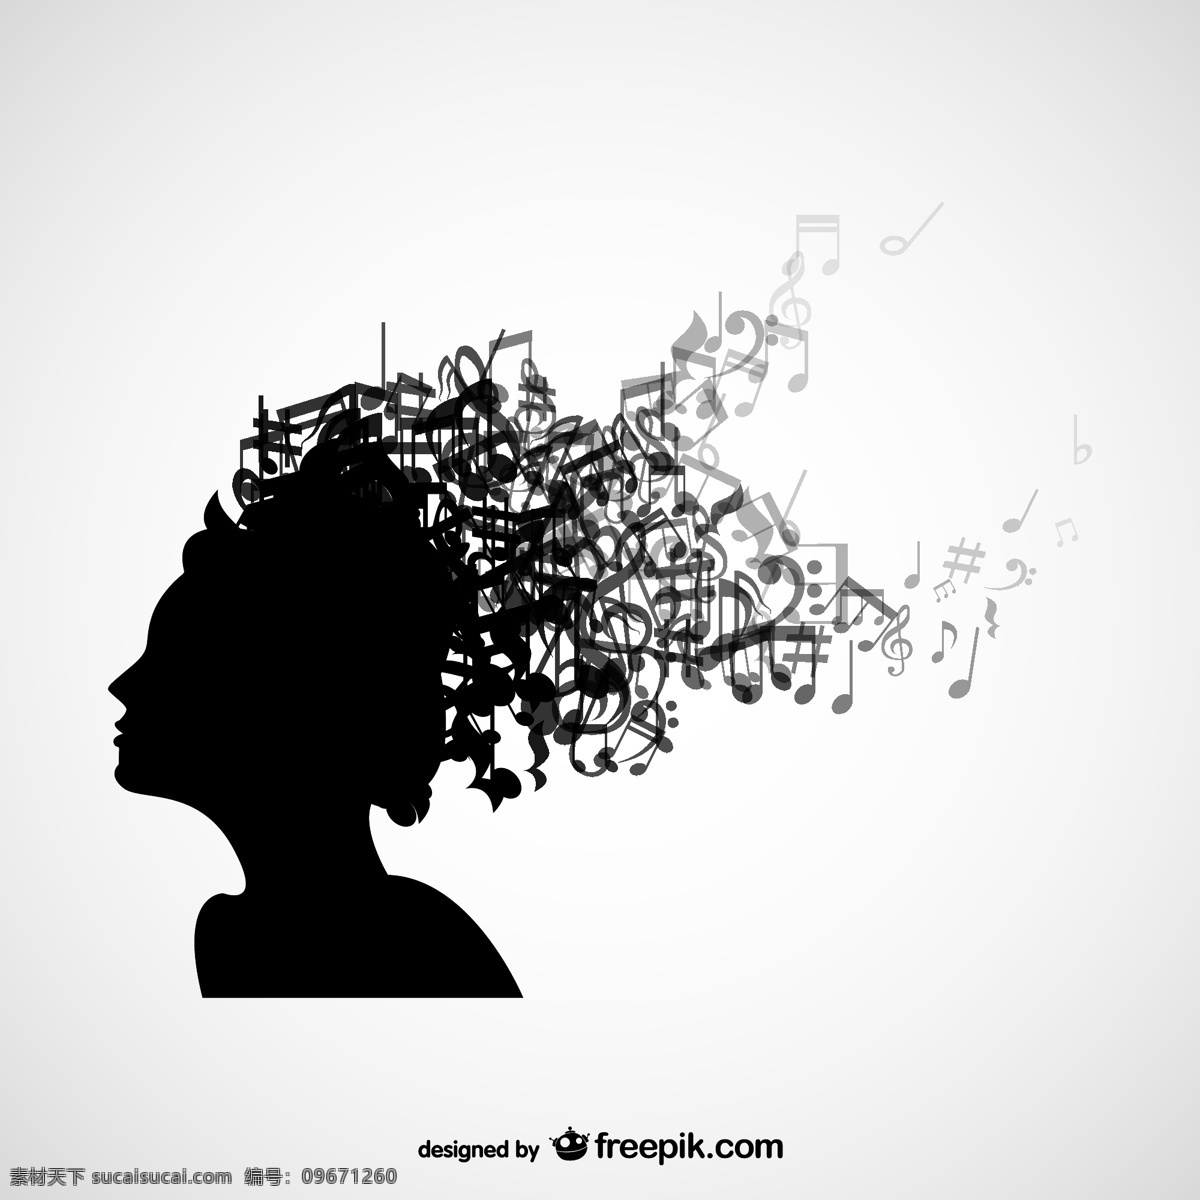 头发 上 有音乐 女人 头上 轮廓 背景 音乐 人 模板 壁纸 图形 布局 笔记 人类 符号 黑色背景 平面设计 黑色 白色